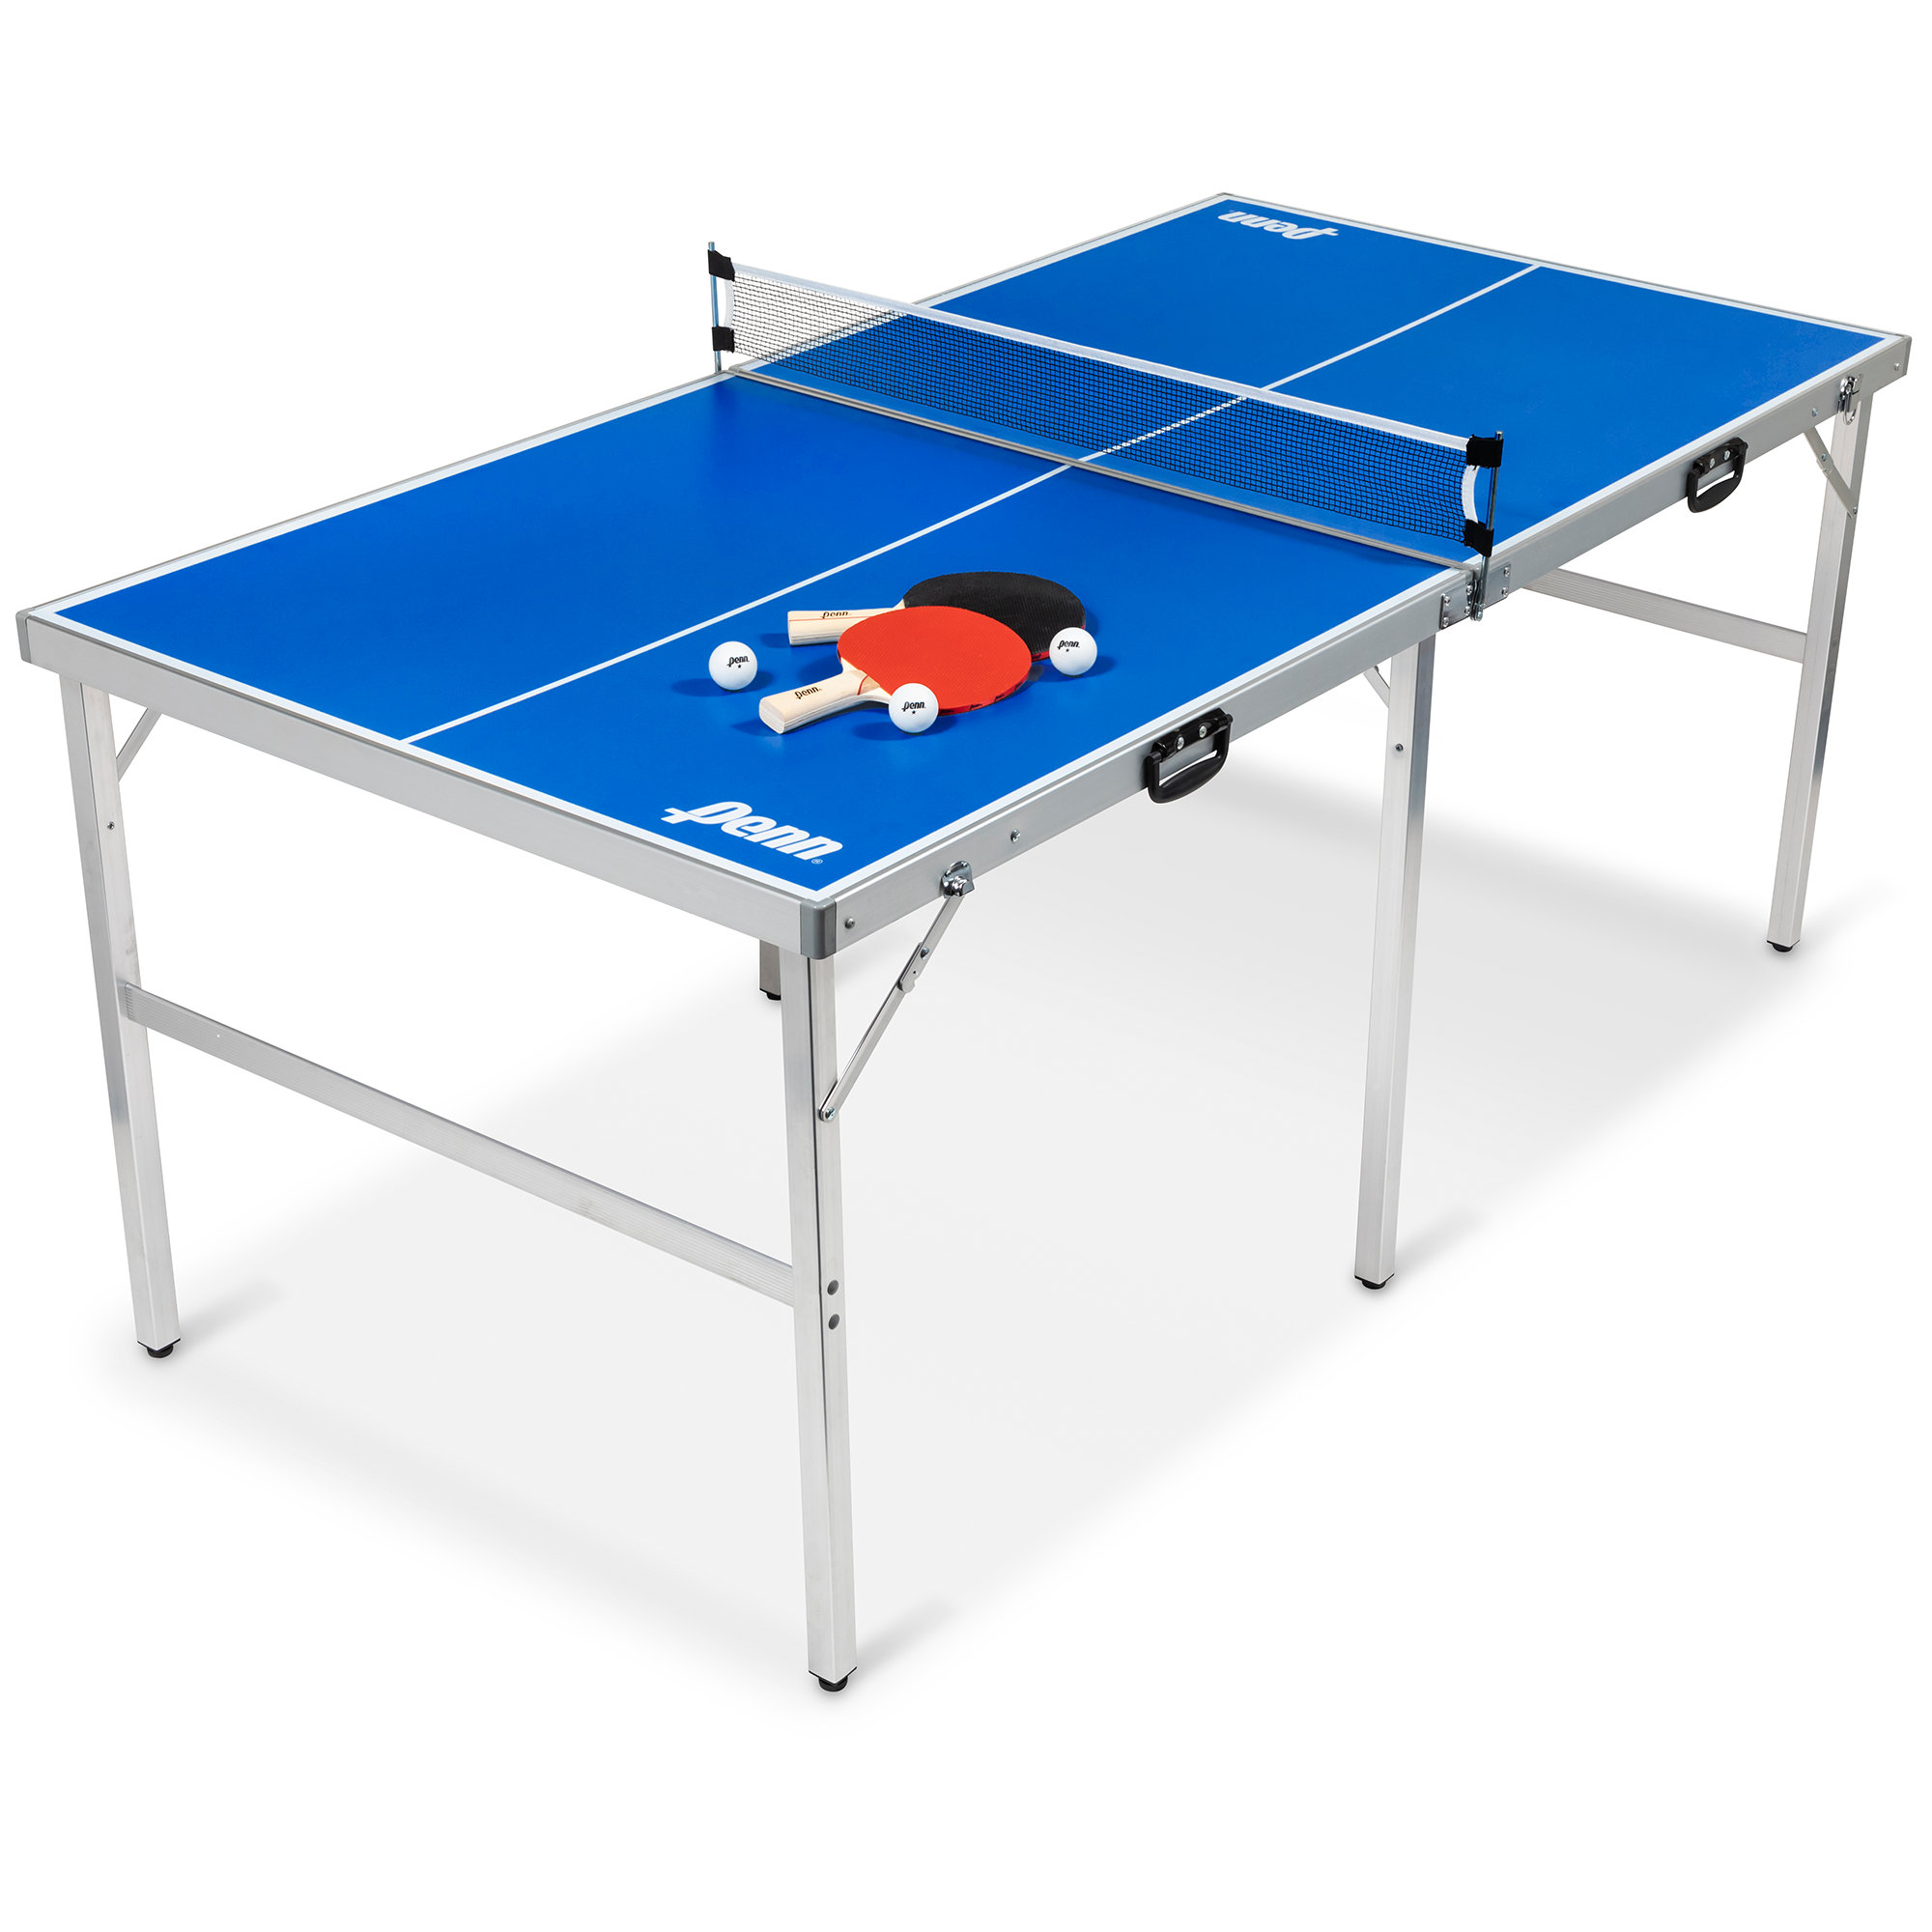 https://assets.wfcdn.com/im/02126331/compr-r85/2002/200297306/table-de-tennis-de-table-pliable-interieur-exterieur-avec-raquettes-et-balles.jpg